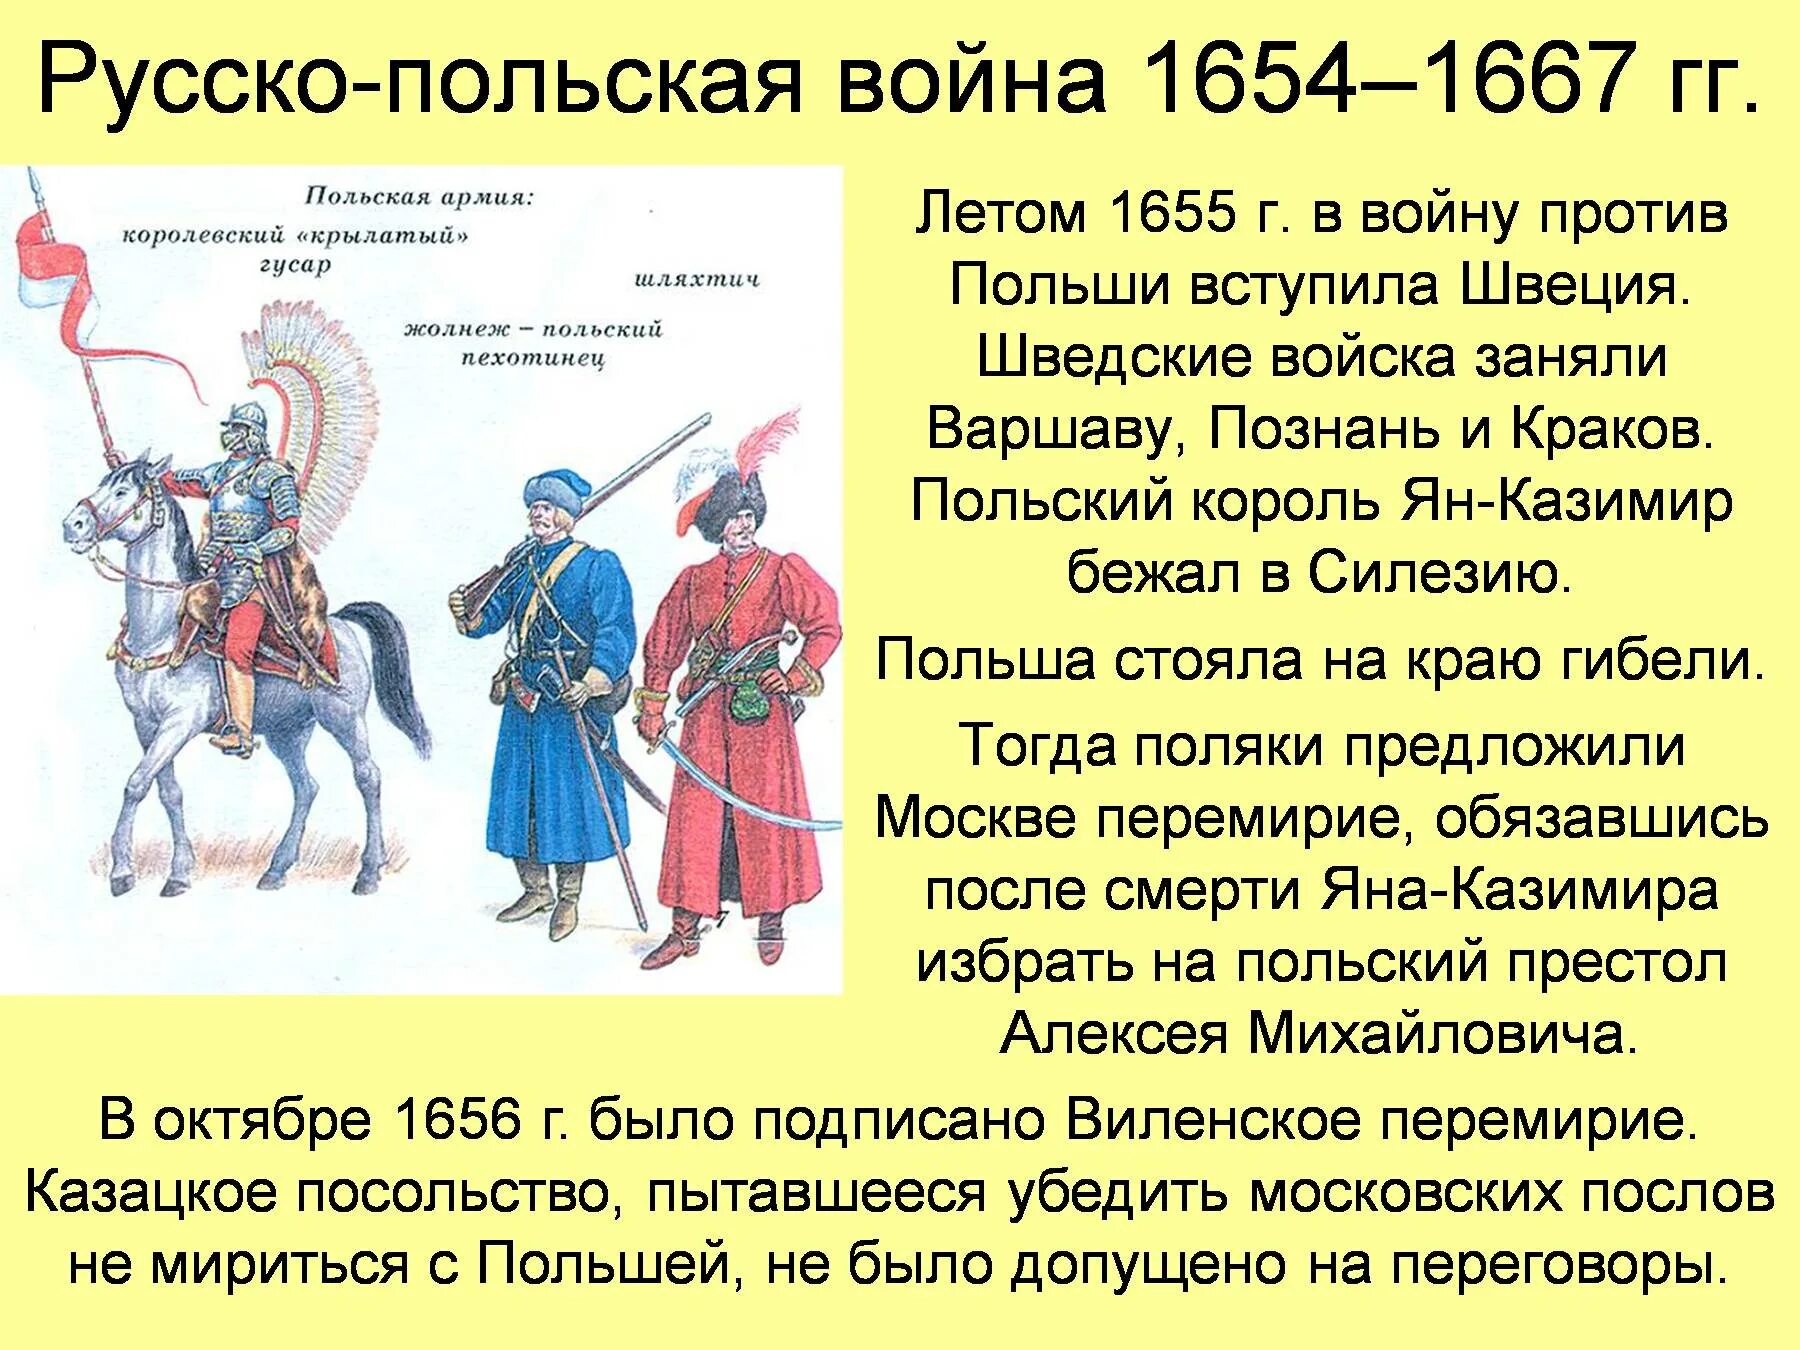 Польские войска заняли москву в результате. Русского польской войне 1654-1667 гг.,.